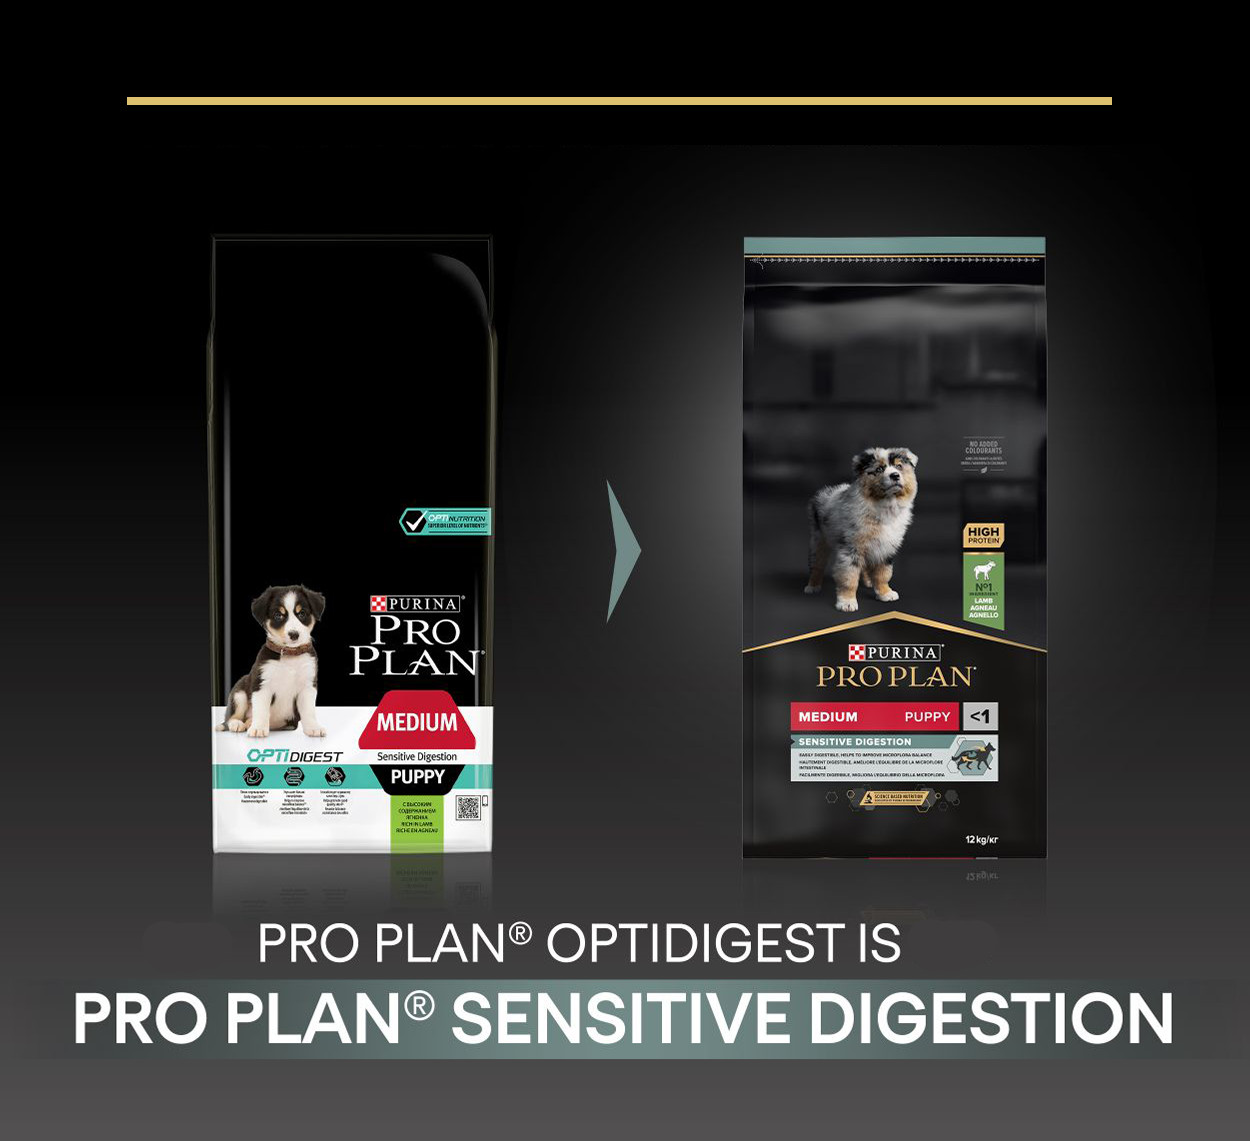 Pro Plan Medium Puppy Sensitive Digestion met lam hondenvoer